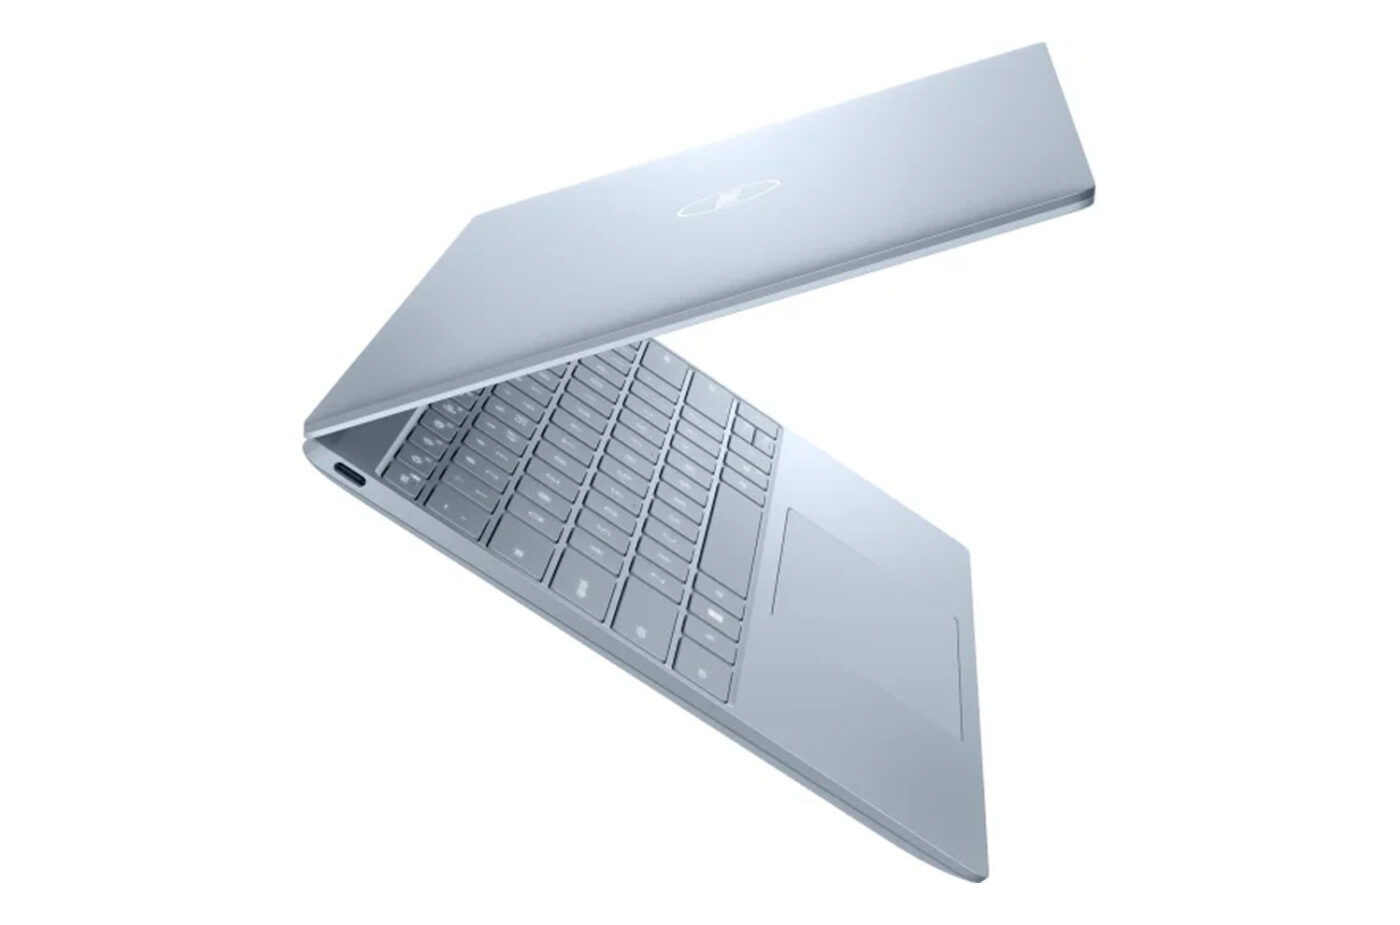 Dell XPS 13 9315 - Wydajność i styl w kompaktowej formie Szukasz laptopa, który łączy w sobie elegancki design, imponującą wydajność i komfort użytkowania? Dell XPS 13 9315 z procesorem Intel Core i7-1250U, 16 GB pamięci RAM, dyskiem SSD o pojemności 512 GB i kartą graficzną Intel Iris Xe to idealny wybór dla osób ceniących mobilność i wszechstronność.